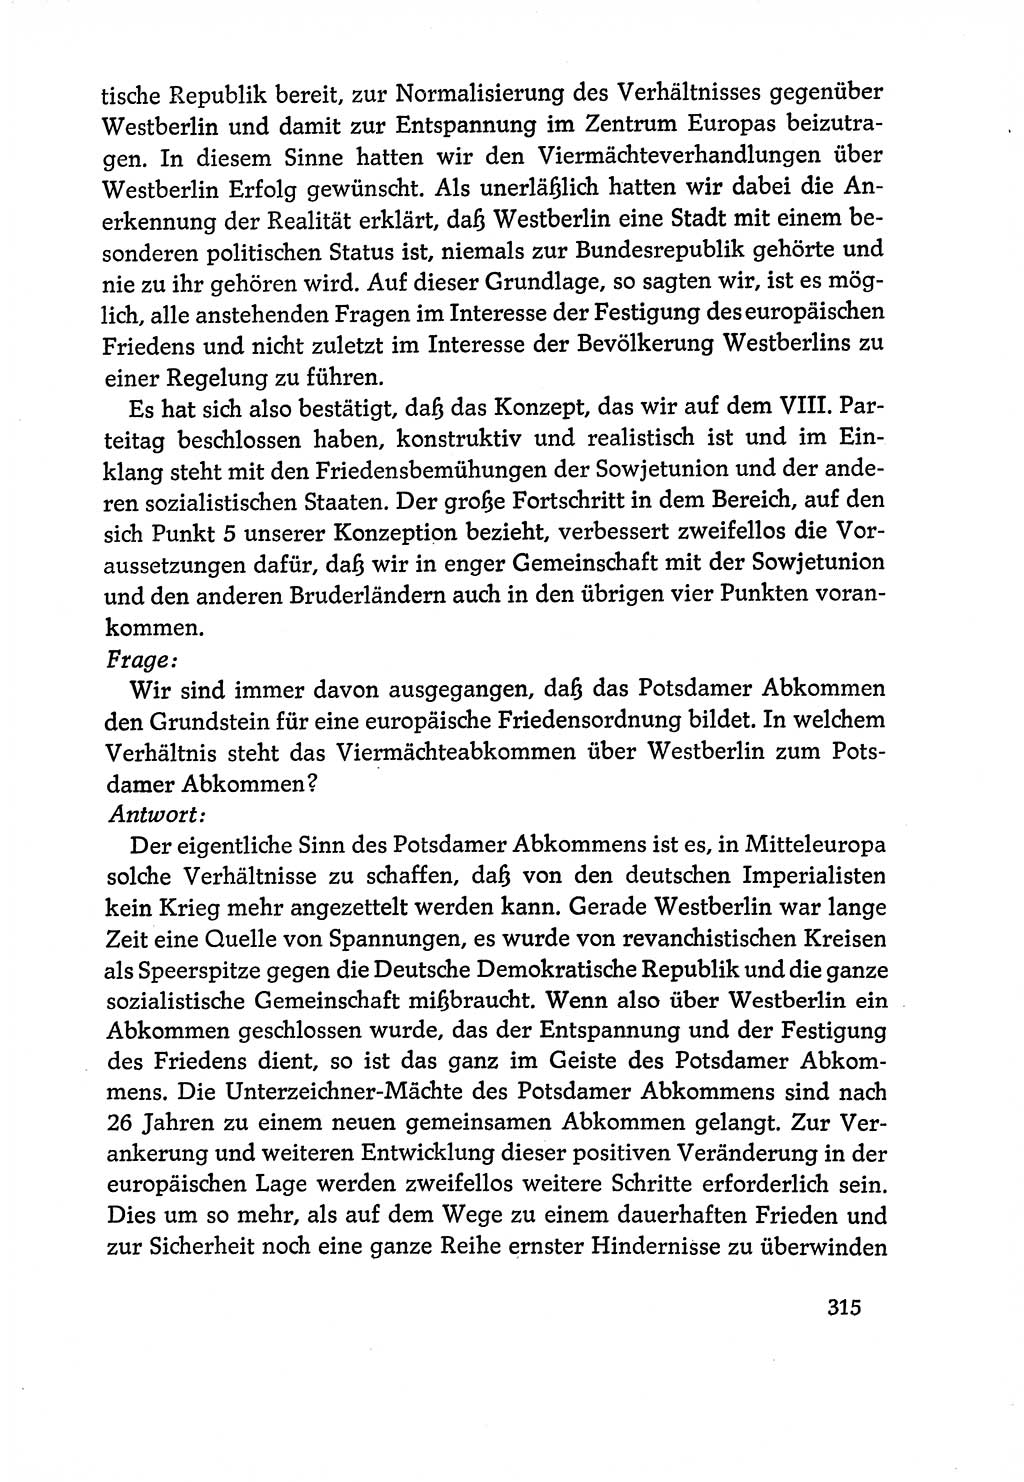 Dokumente der Sozialistischen Einheitspartei Deutschlands (SED) [Deutsche Demokratische Republik (DDR)] 1970-1971, Seite 315 (Dok. SED DDR 1970-1971, S. 315)